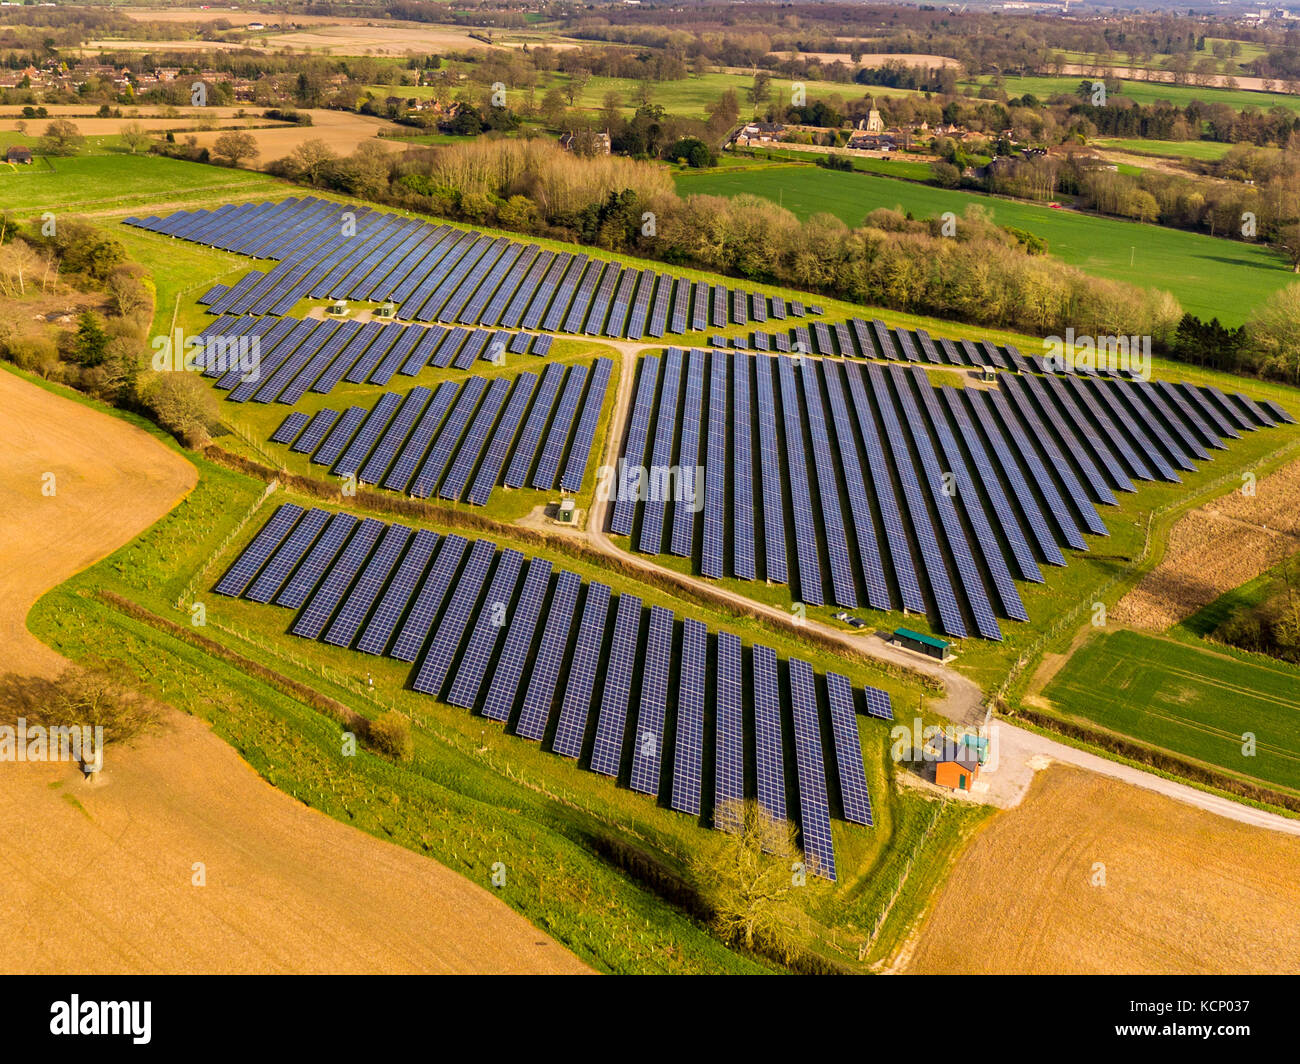 La ferme solaire hothfield, Kent, drone abattu Banque D'Images